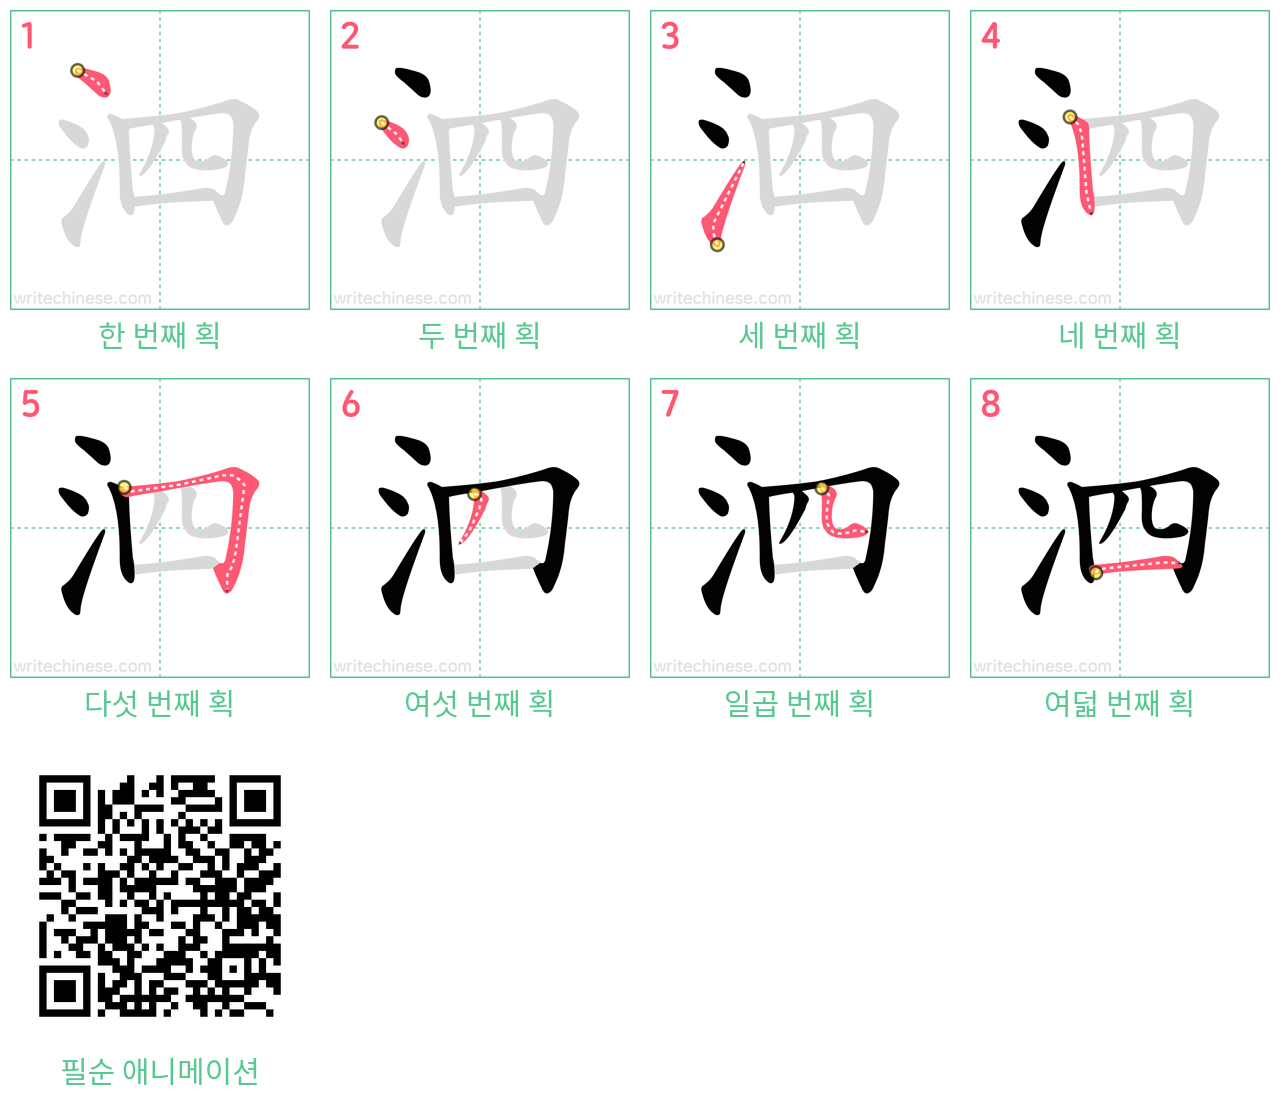 泗 step-by-step stroke order diagrams